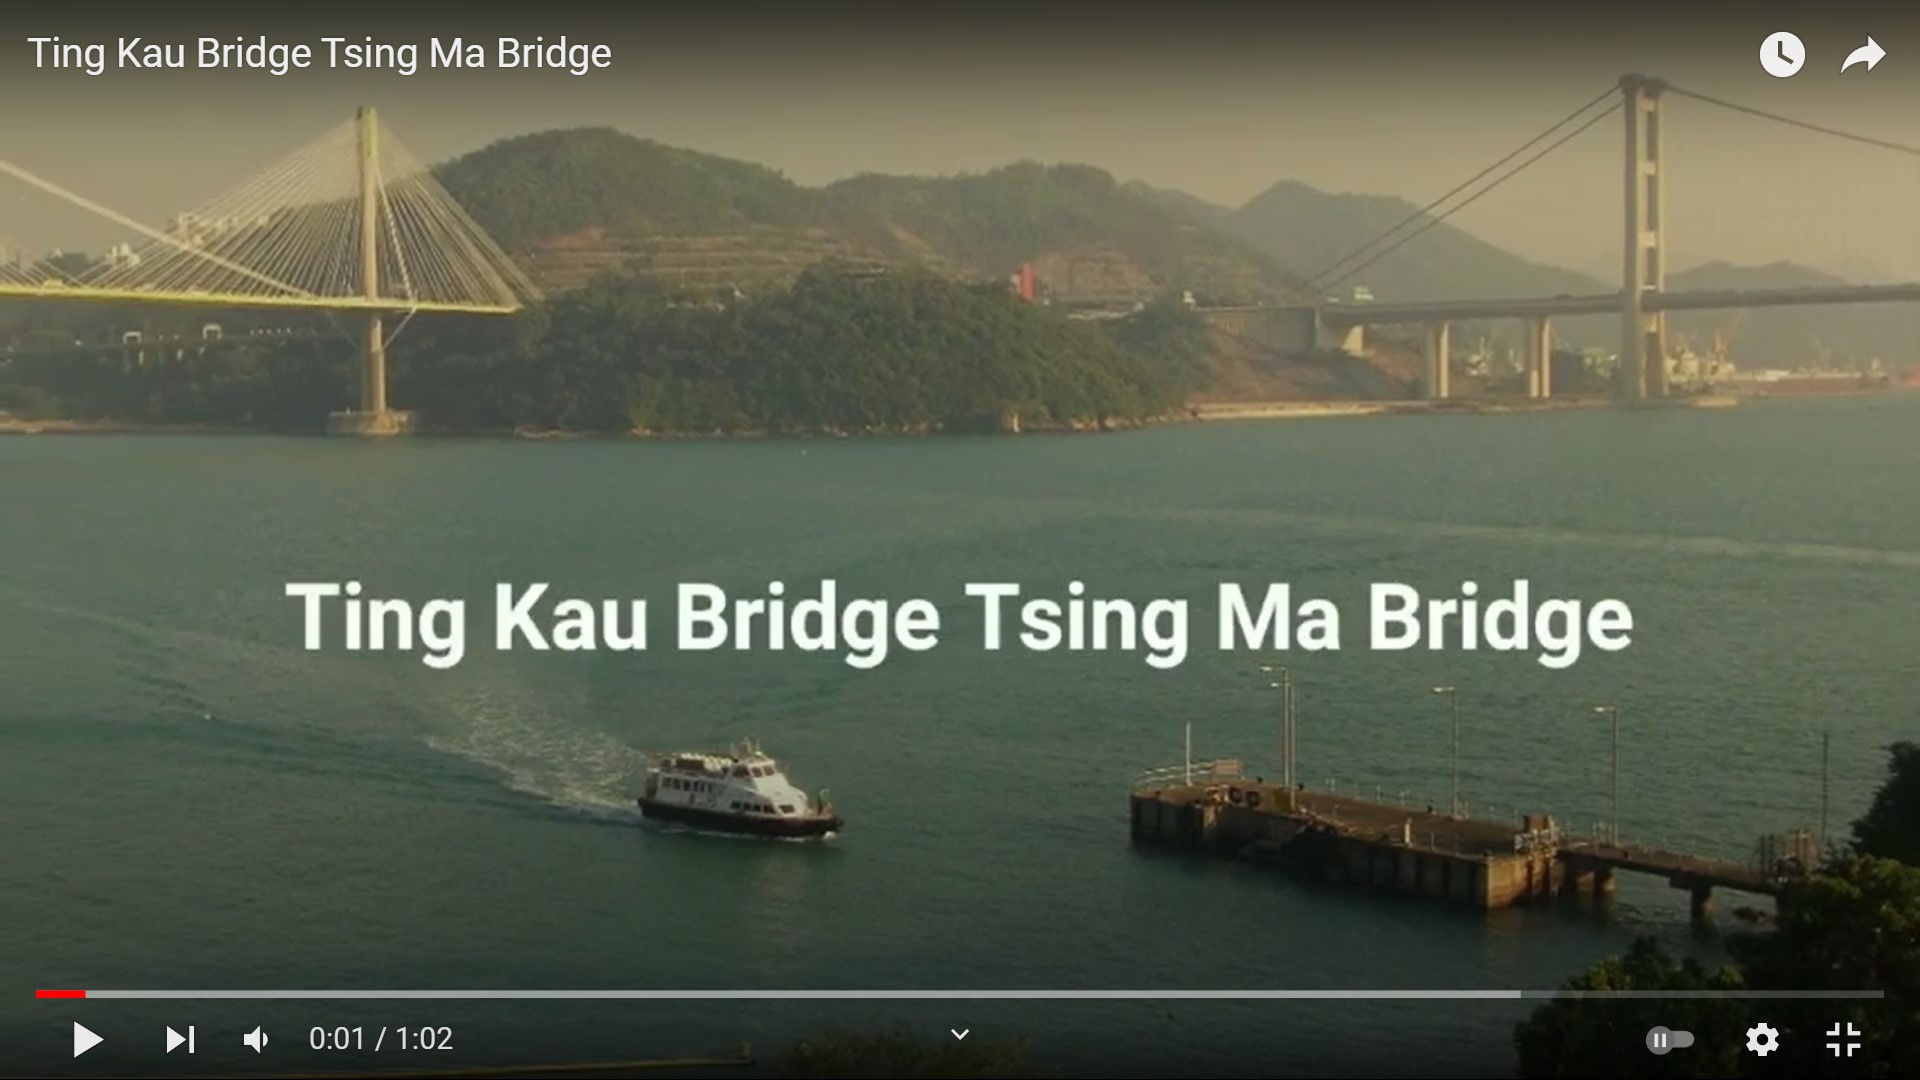 Frank’s “Ting Kau Bridge Tsing Ma Bridge” snapshots video